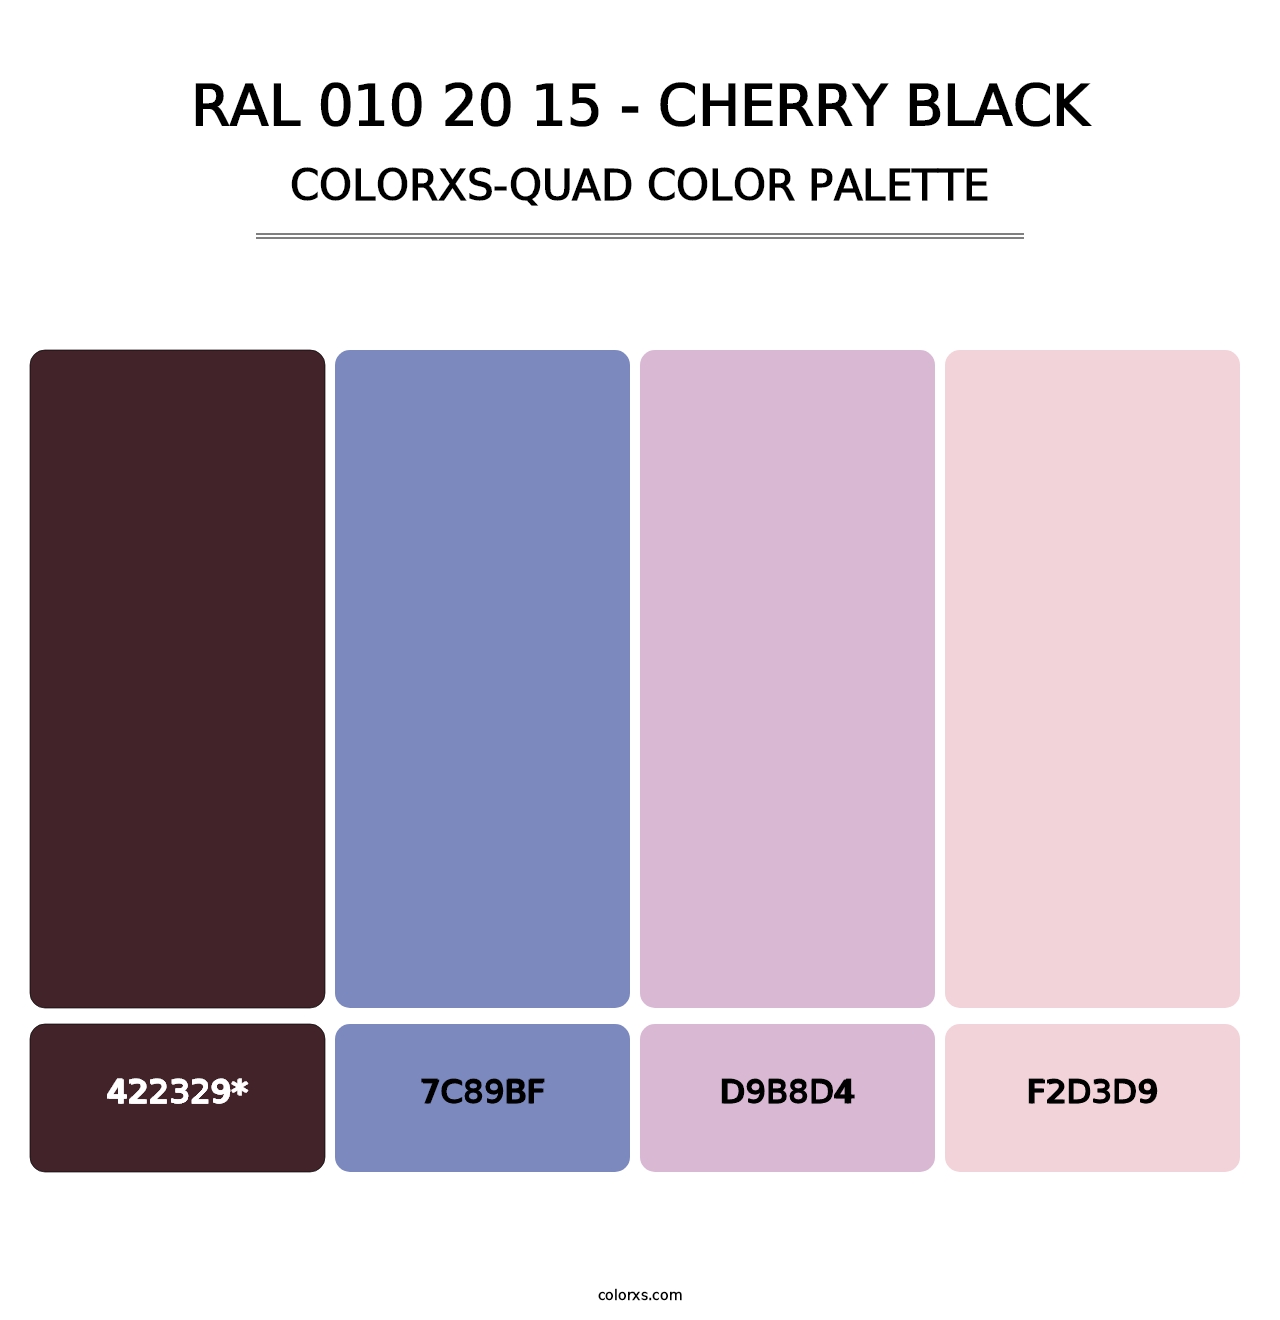 RAL 010 20 15 - Cherry Black - Colorxs Quad Palette